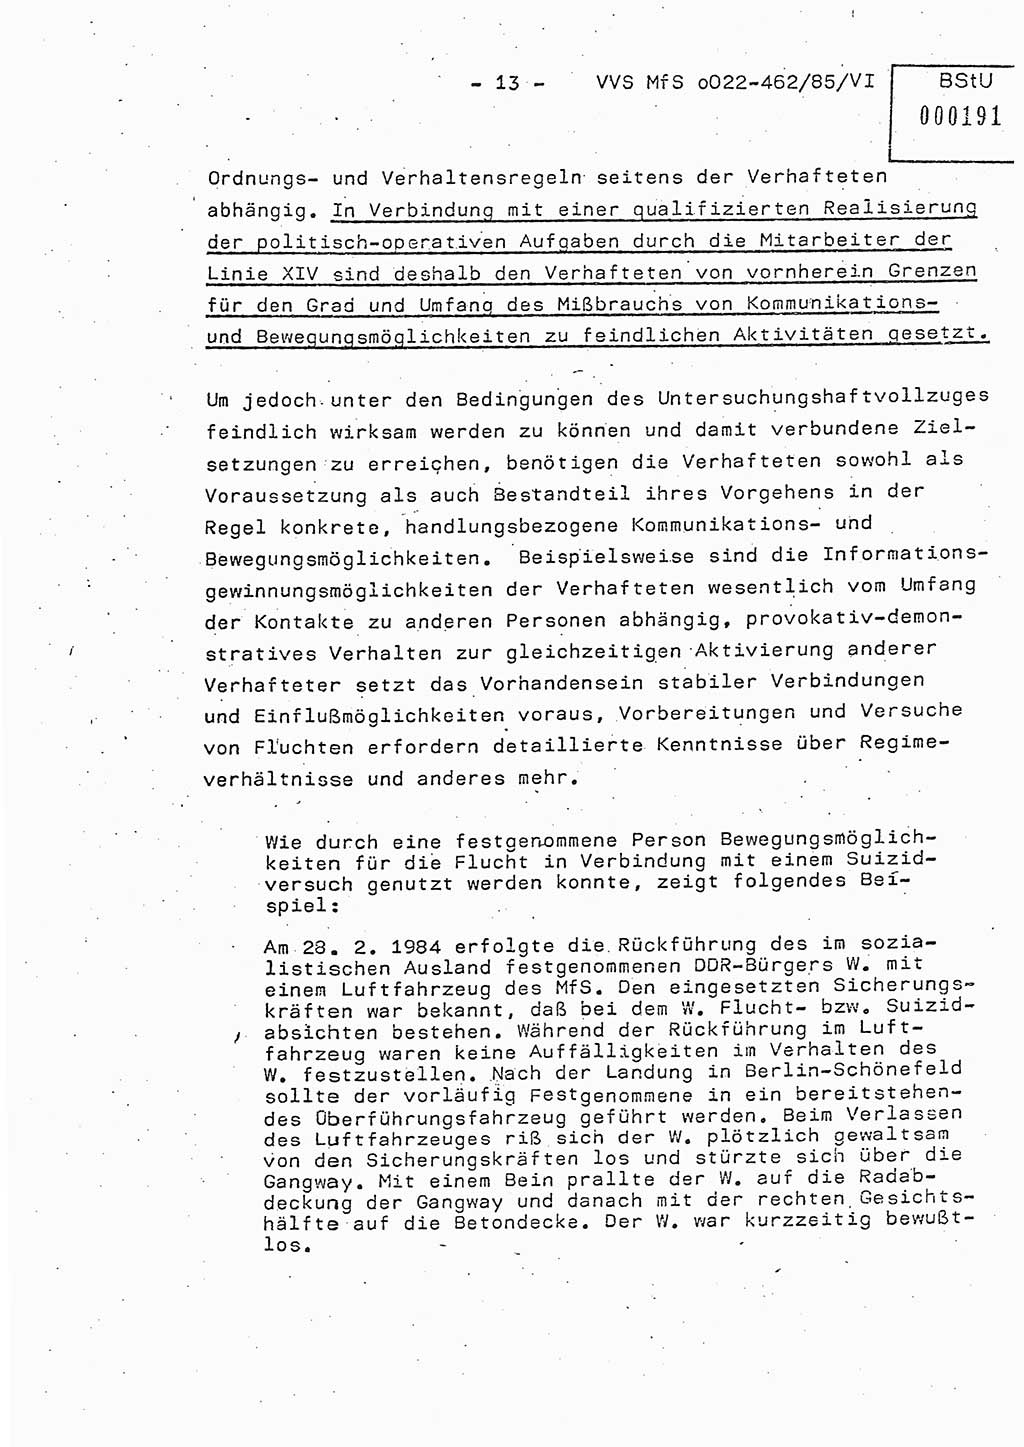 Der Untersuchungshaftvollzug im MfS, Schulungsmaterial Teil Ⅵ, Ministerium für Staatssicherheit [Deutsche Demokratische Republik (DDR)], Abteilung (Abt.) ⅩⅣ, Vertrauliche Verschlußsache (VVS) o022-462/85/Ⅵ, Berlin 1985, Seite 13 (Sch.-Mat. Ⅵ MfS DDR Abt. ⅩⅣ VVS o022-462/85/Ⅵ 1985, S. 13)